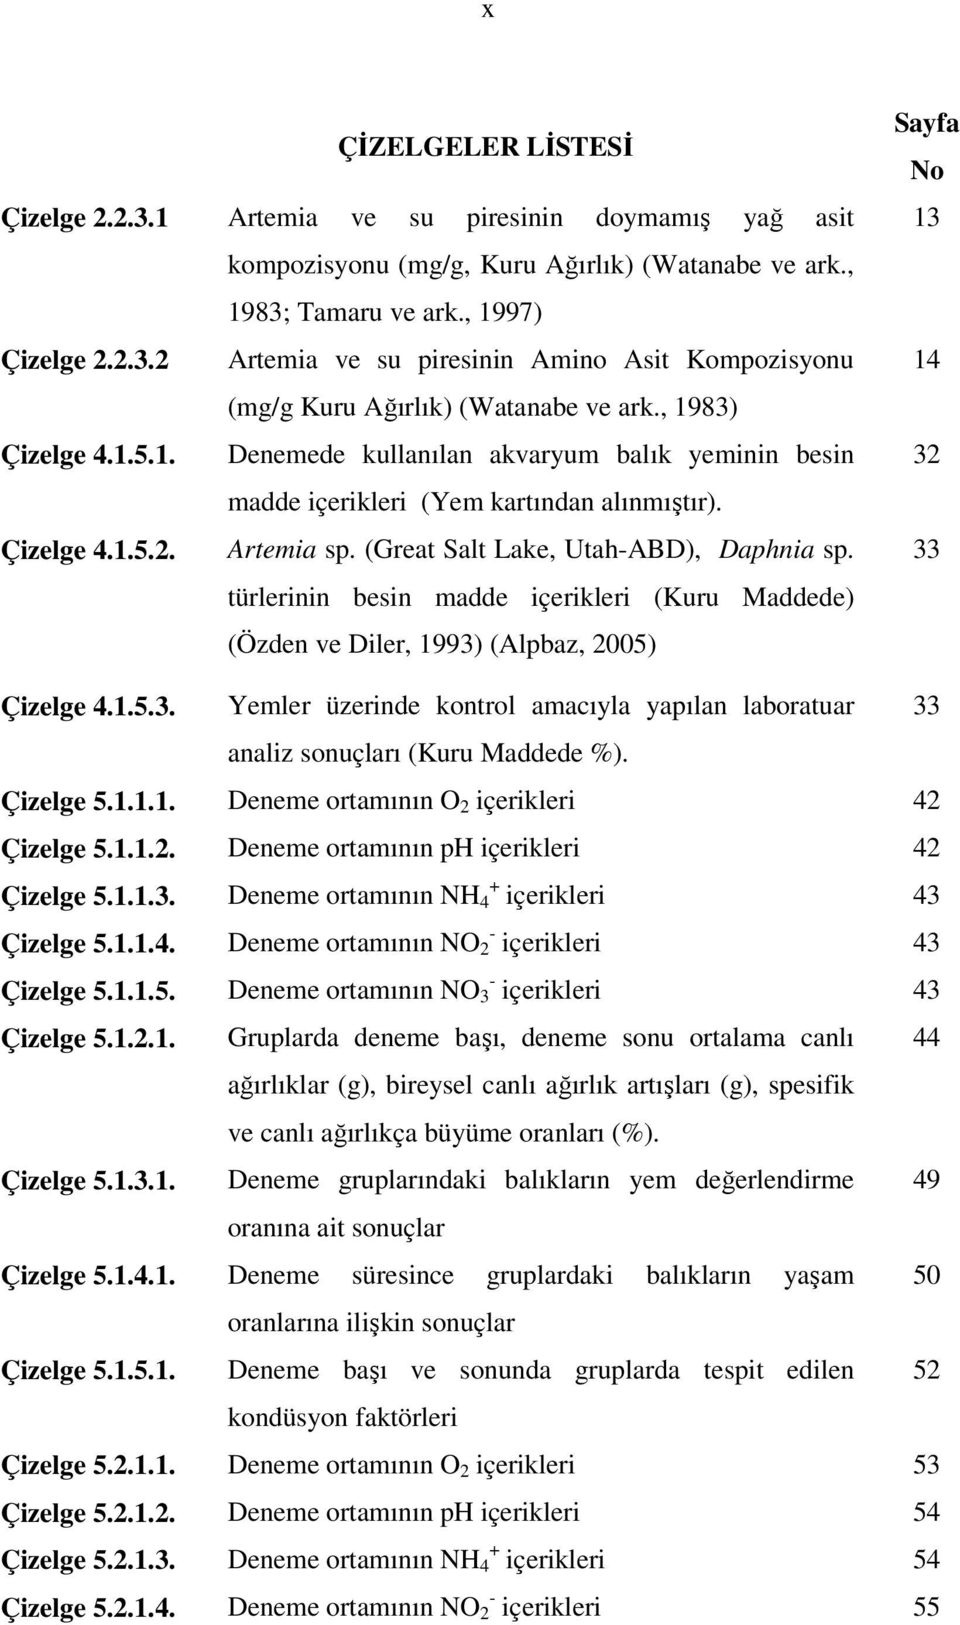 türlerinin besin madde içerikleri (Kuru Maddede) (Özden ve Diler, 1993) (Alpbaz, 2005) Sayfa No 13 14 32 33 Çizelge 4.1.5.3. Yemler üzerinde kontrol amacıyla yapılan laboratuar 33 analiz sonuçları (Kuru Maddede %).